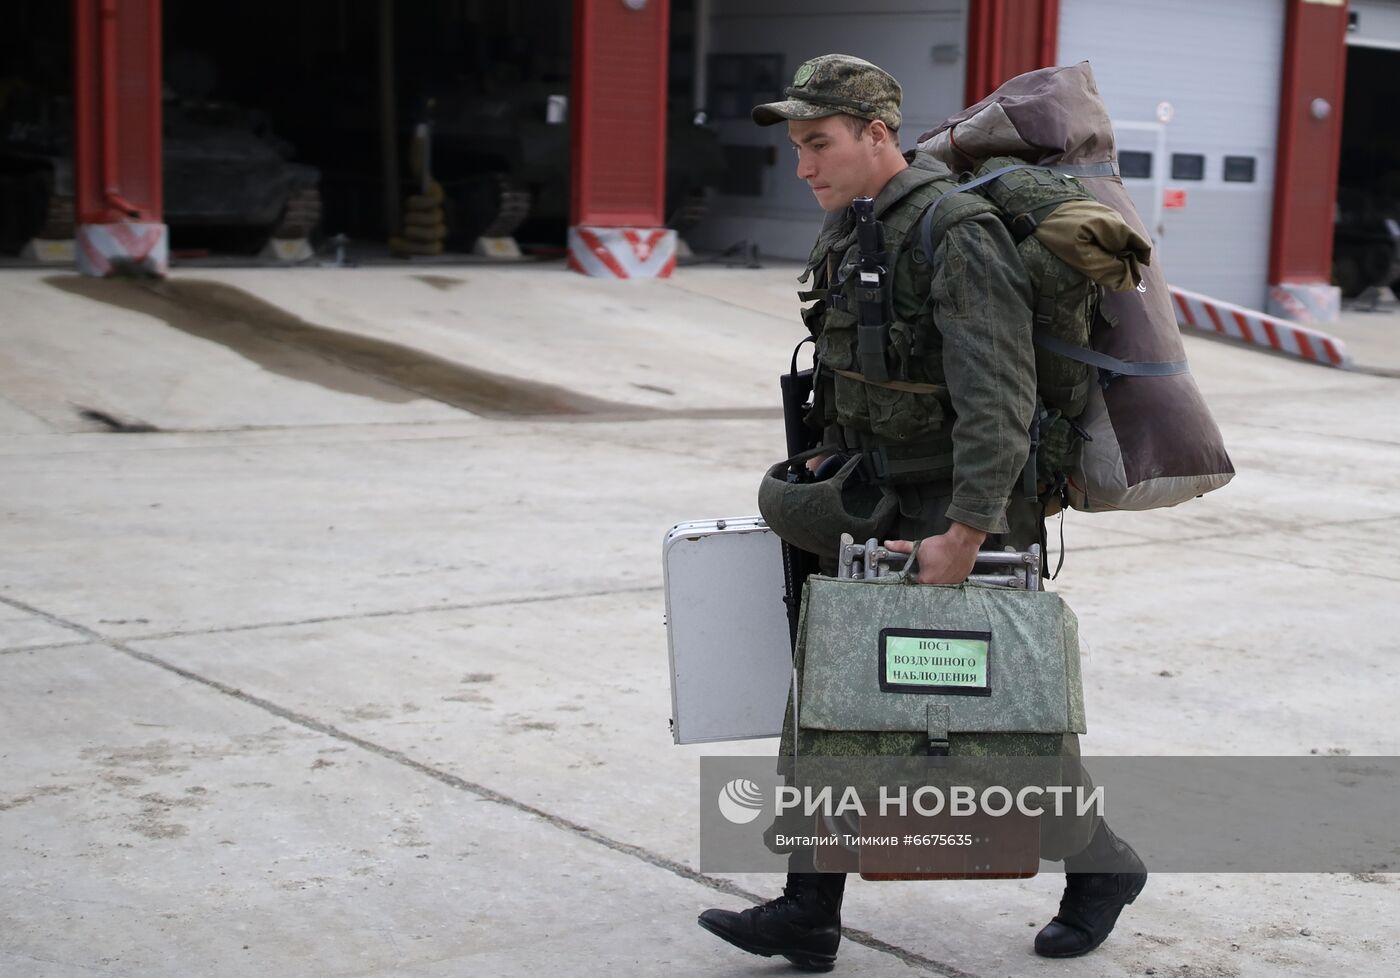 Контрольная проверка готовности Новороссийской десантно-штурмовой дивизии